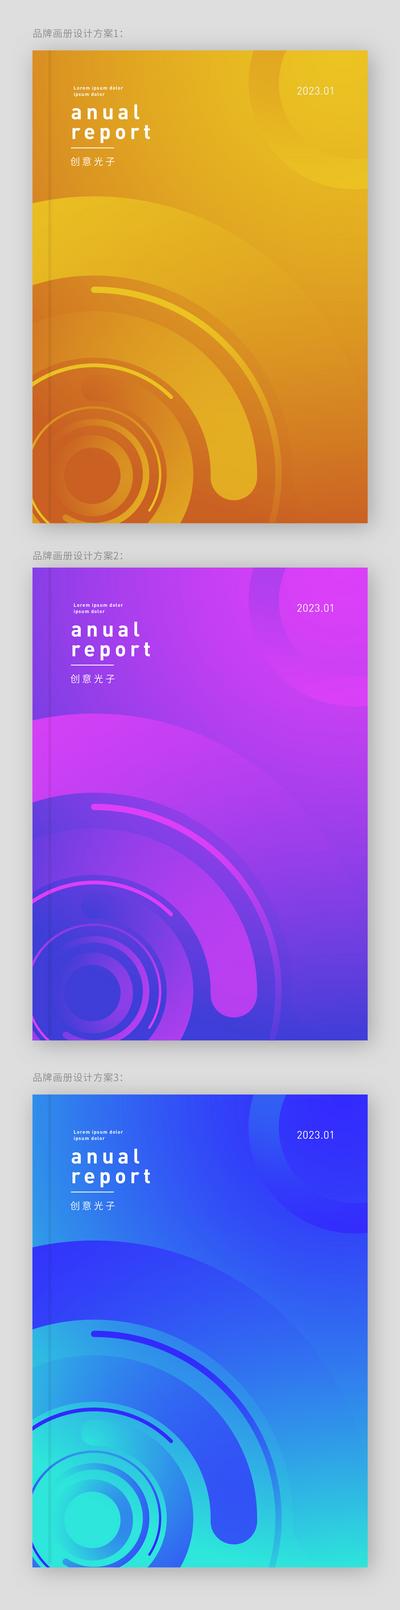 南门网 品牌画册 封面设计 几何 扁平 简约 色彩 分割 渐变